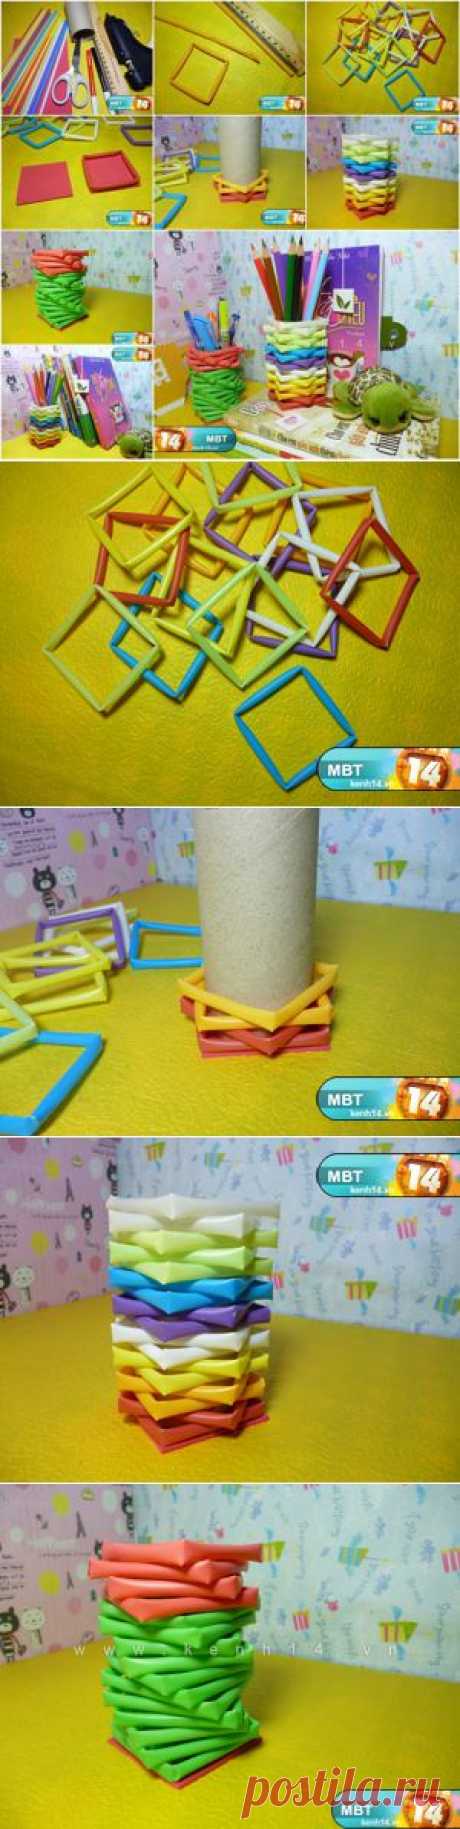 Как DIY держатель для  карандашей из питьевой соломинки и бобины от  туалетная бумага| iCreativeIdeas.com